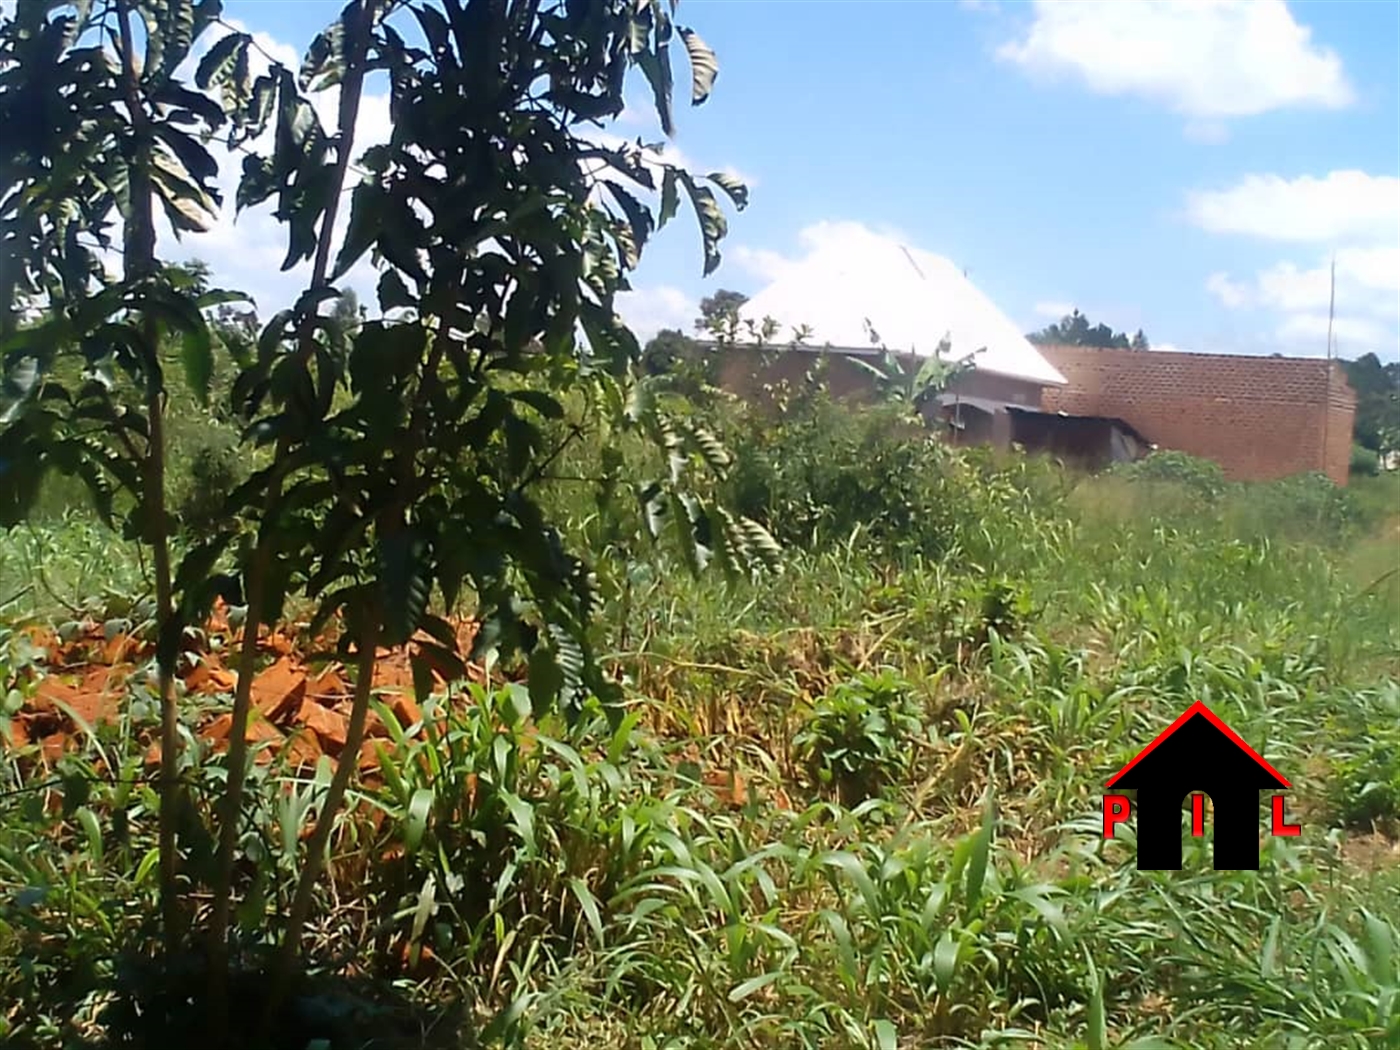 Commercial Land for sale in Ndibulungi Luweero